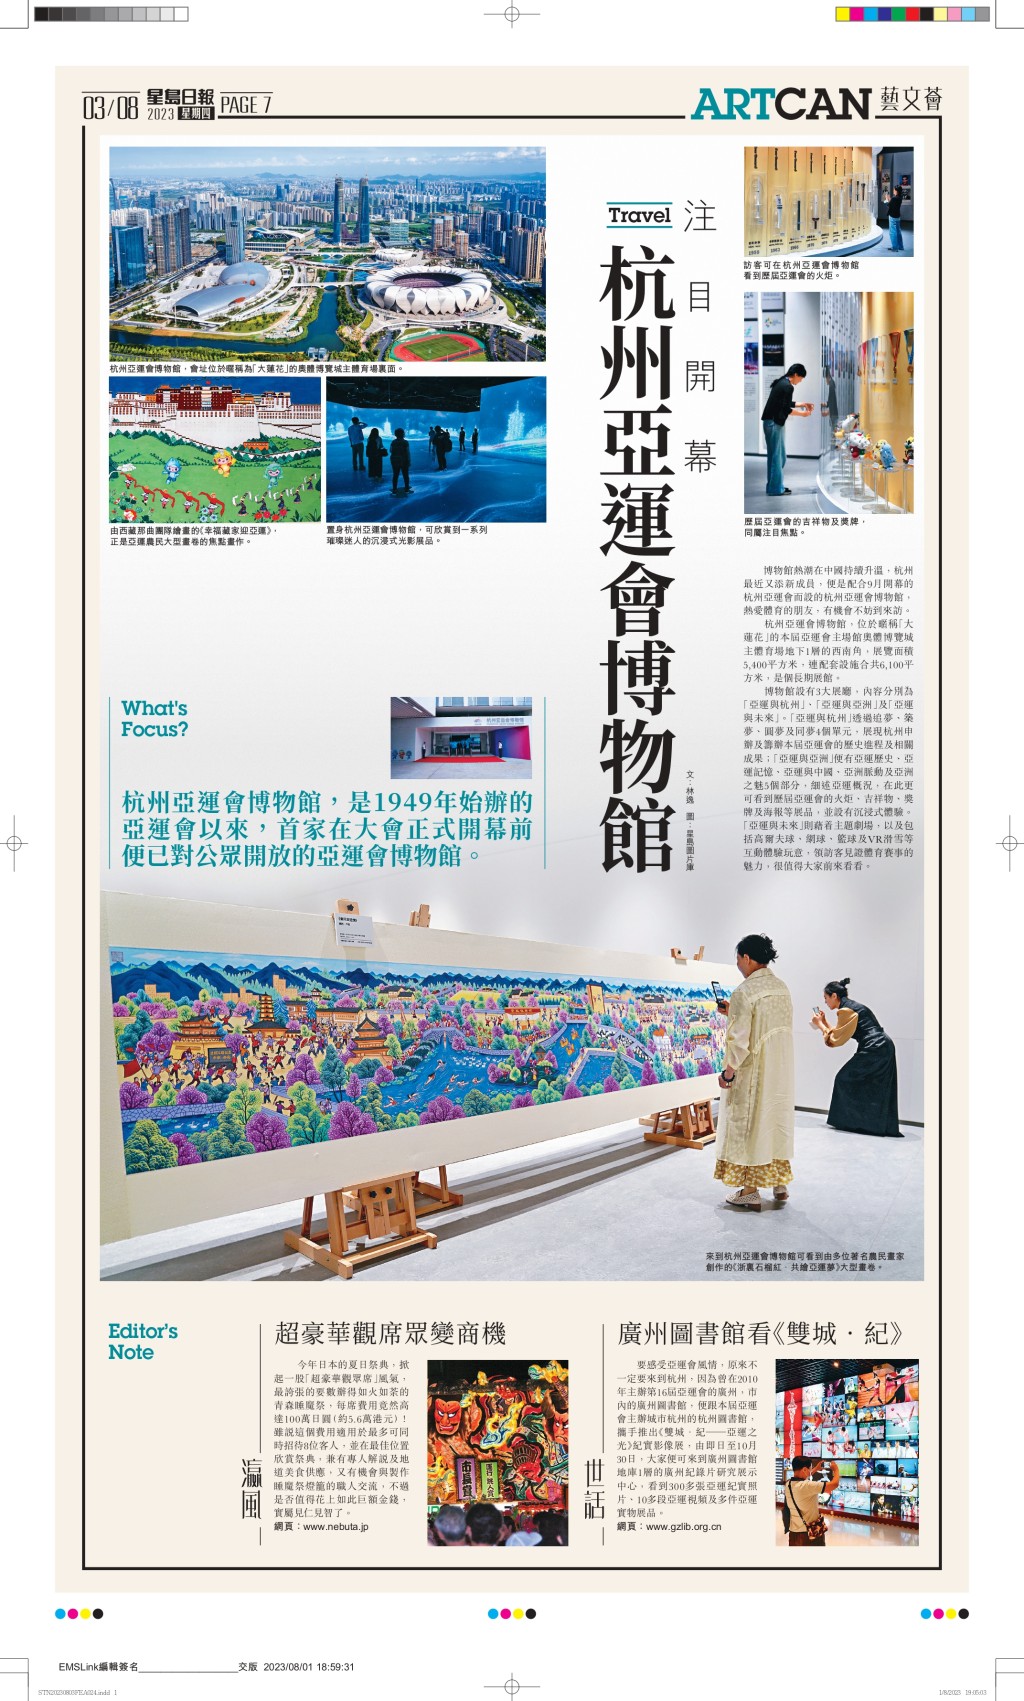 《ArtCan》8版內容衝出香港，介紹世界各地旅遊景點、藝術博物館及大型藝術展覽、文化活動等等